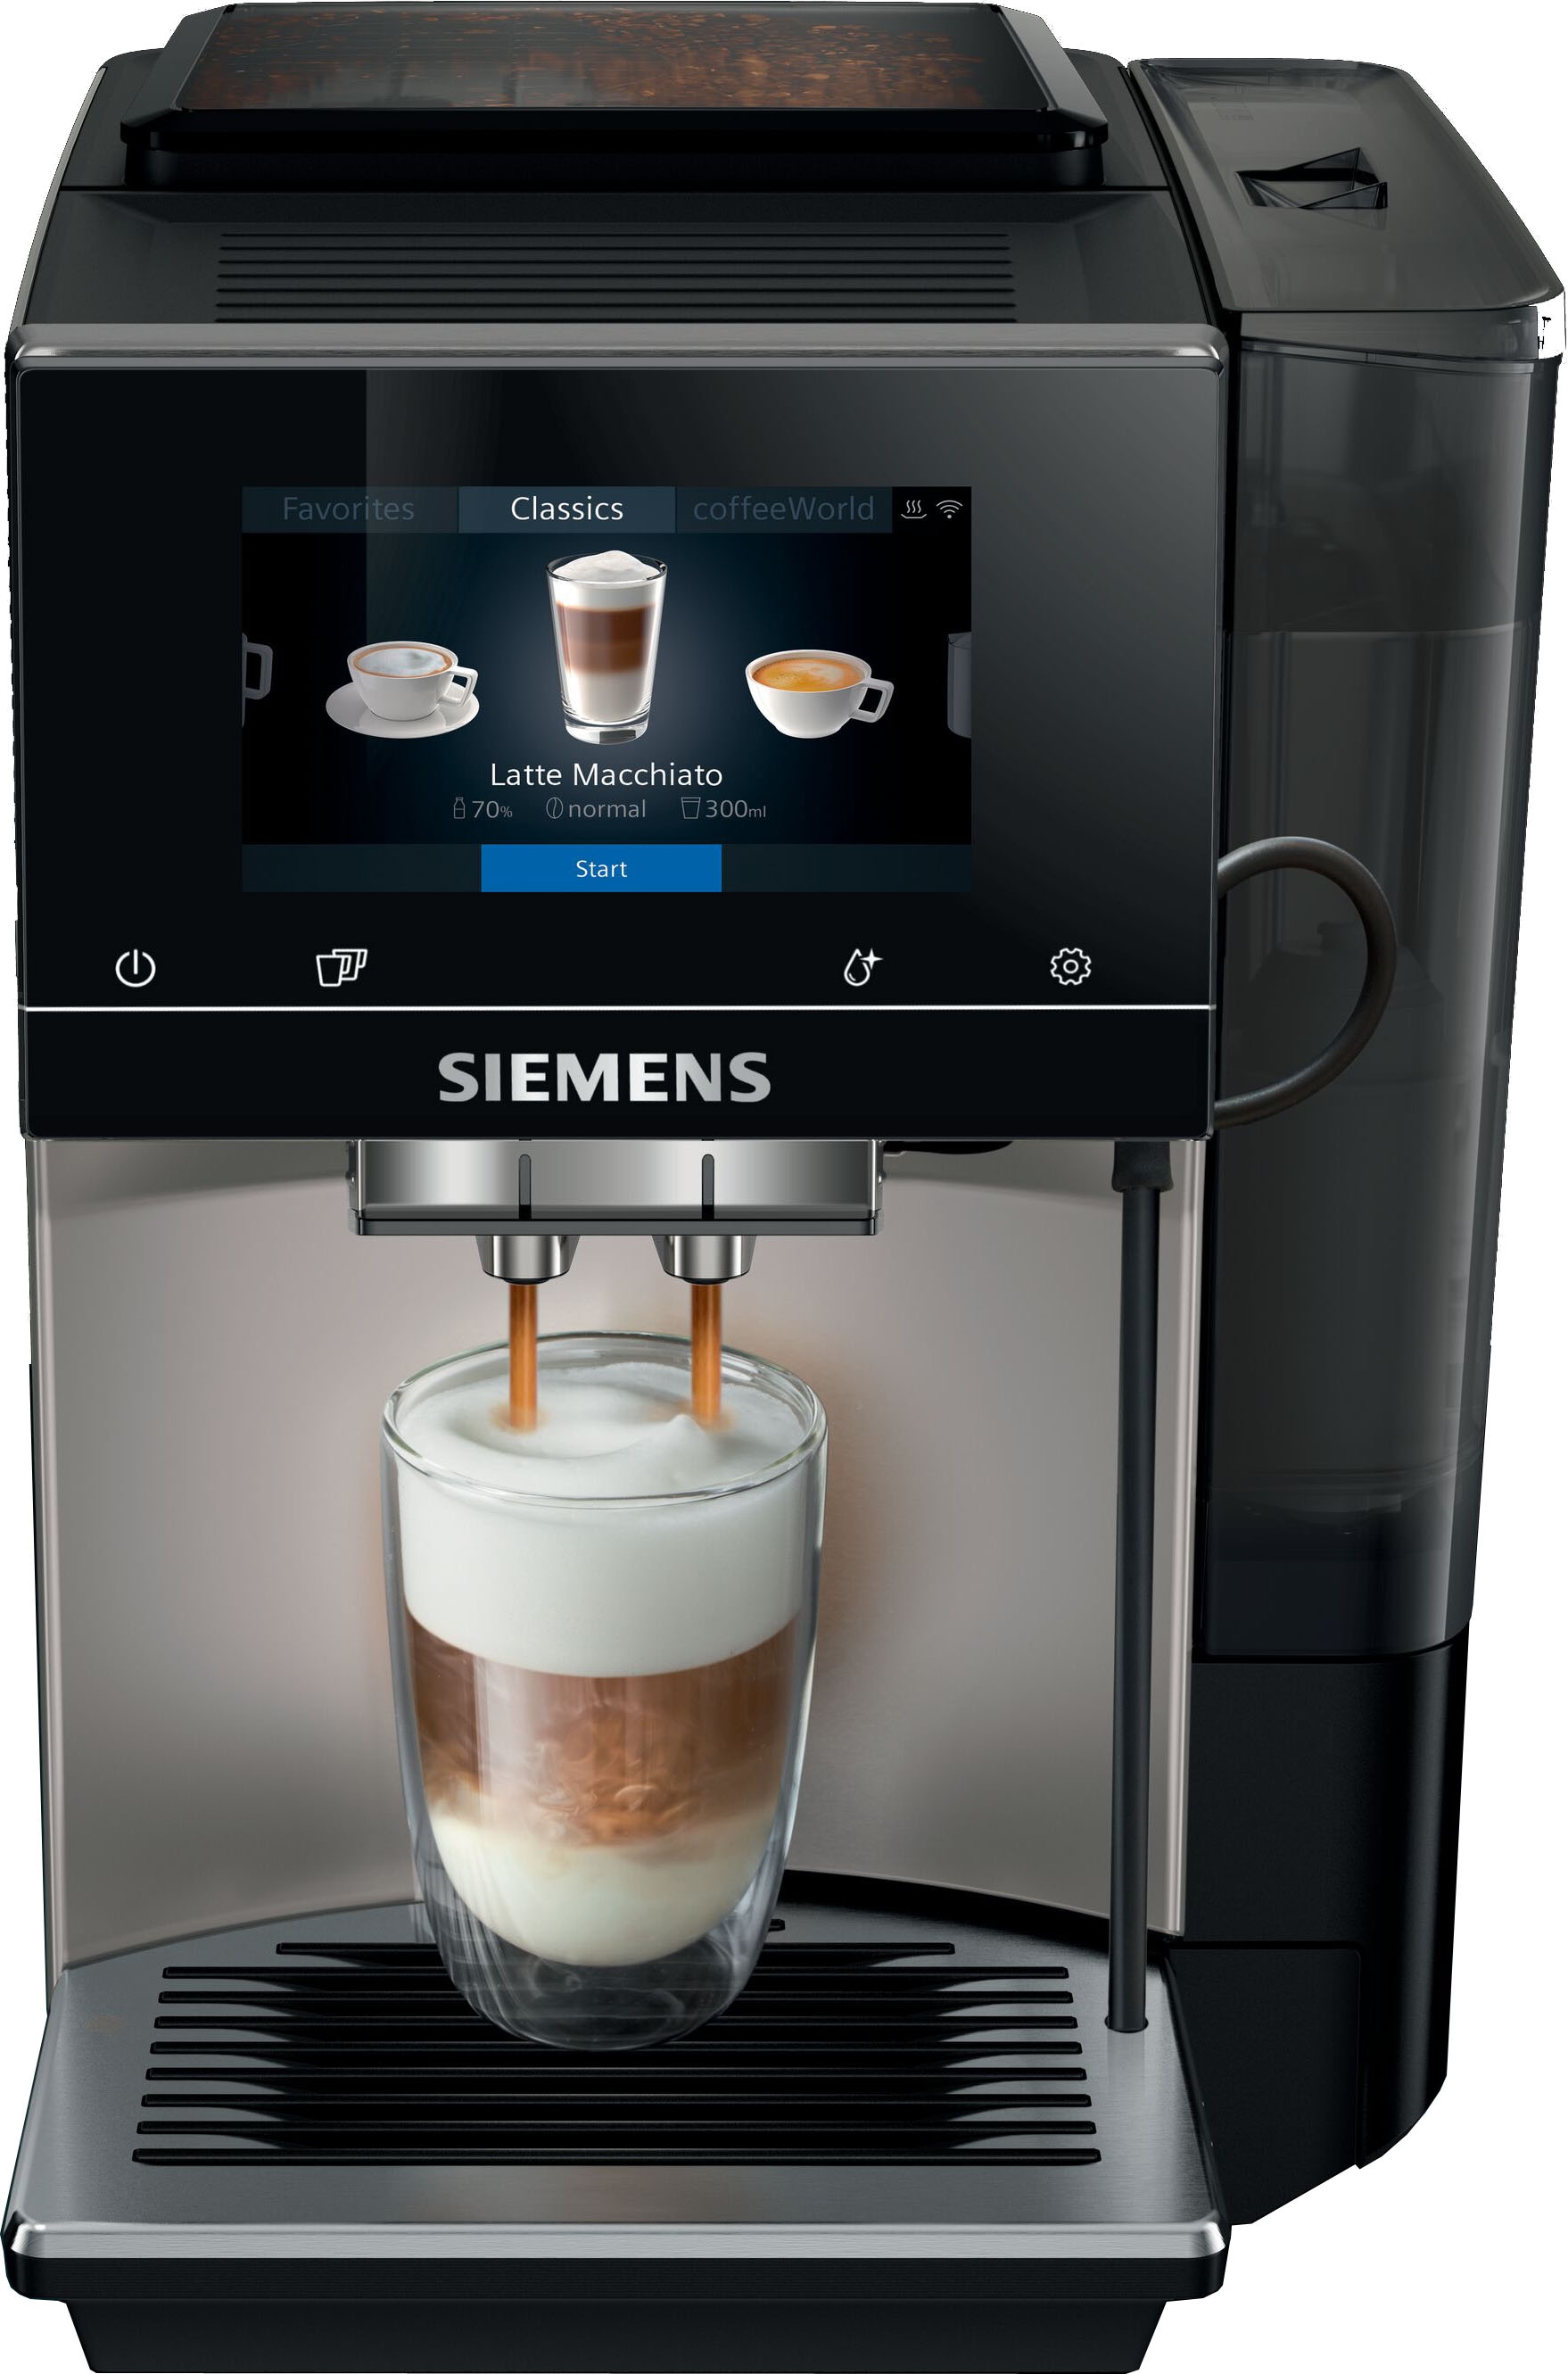 SIEMENS Kaffeevollautomat »EQ.6 plus s700 TE657M03DE«, autom. Reinigung,  bis zu 4 Favoriten, inkl. isolierter Milchbehälter kaufen